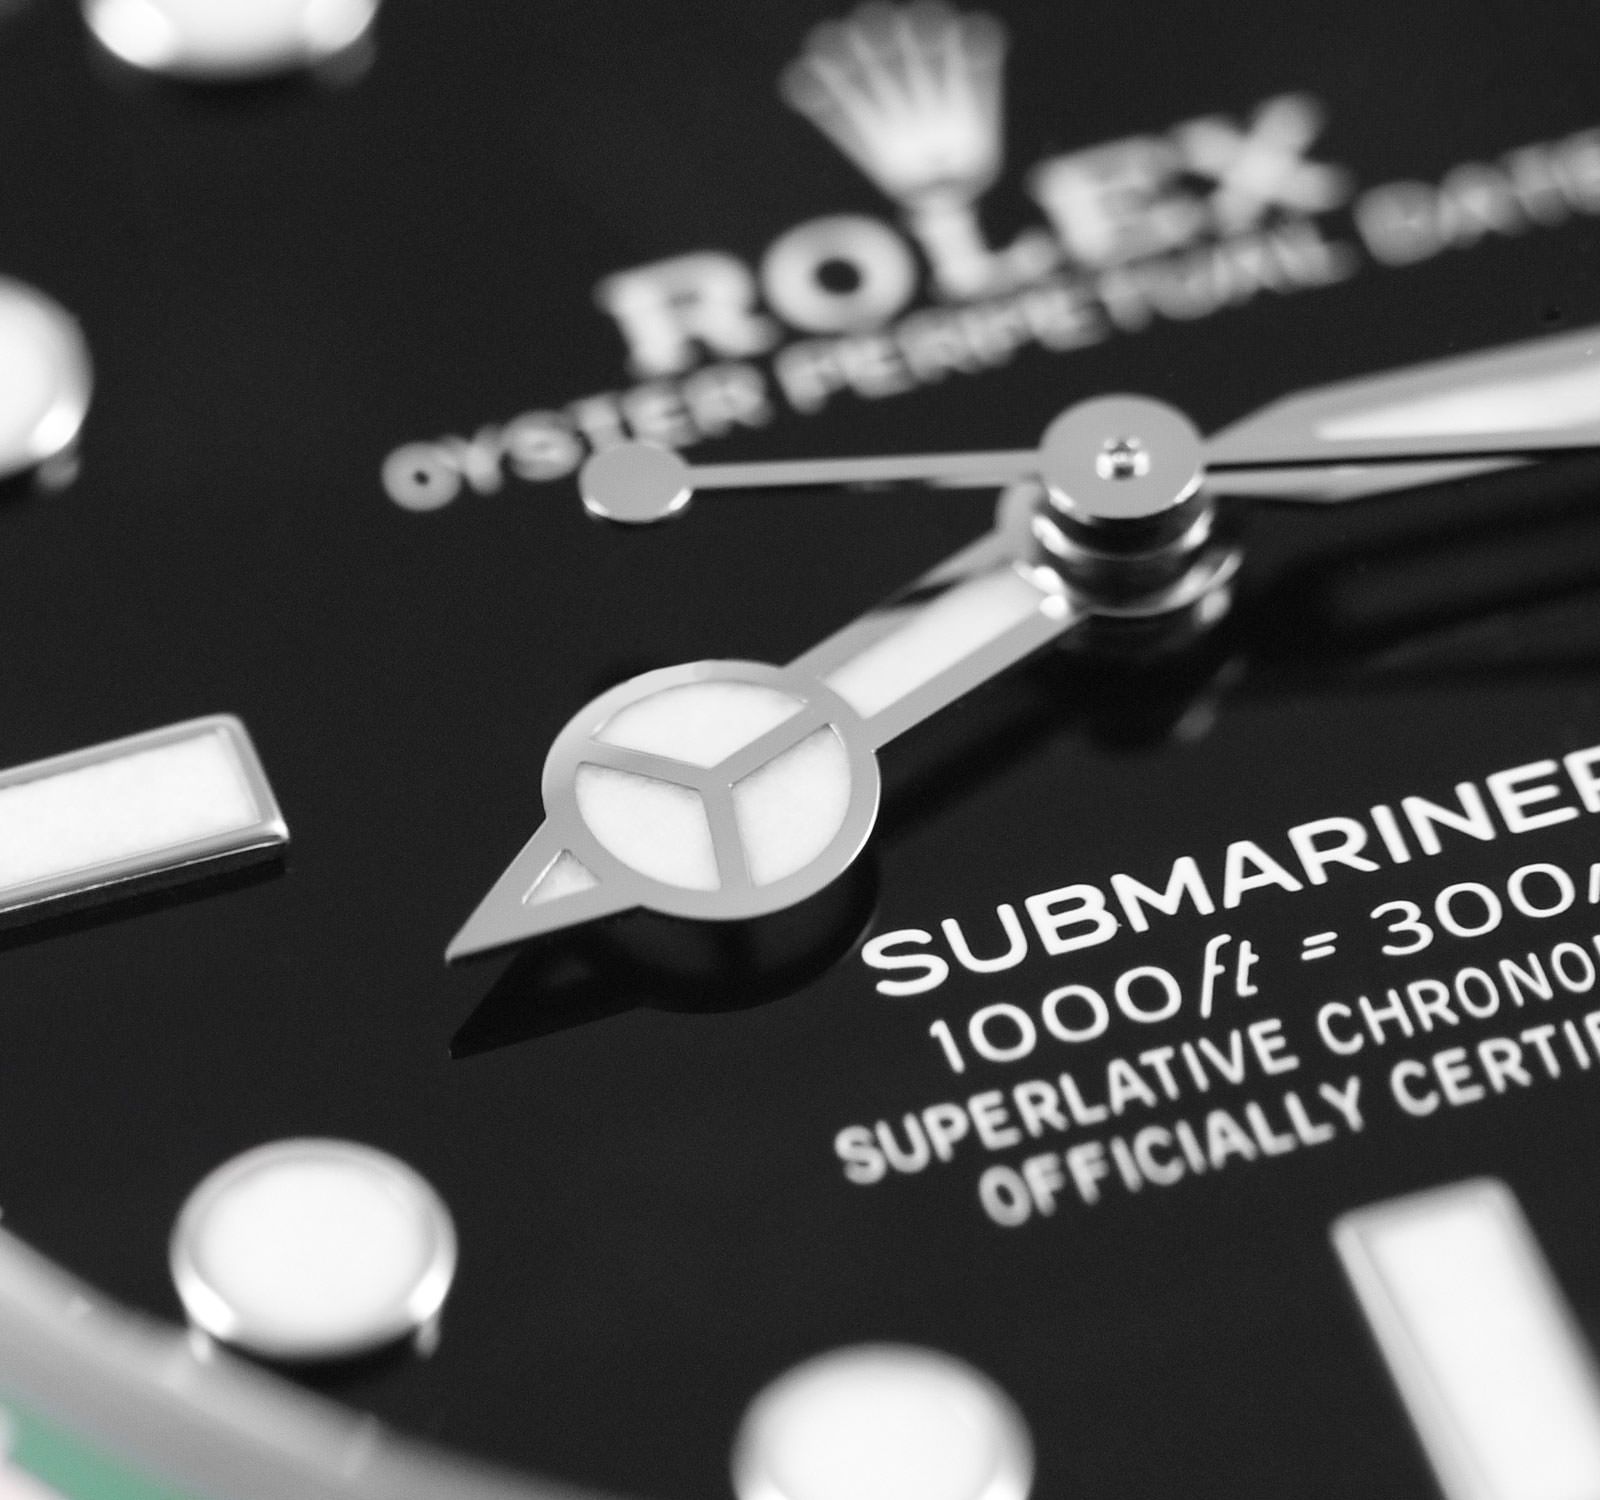 Submariner 126610LV-BLK